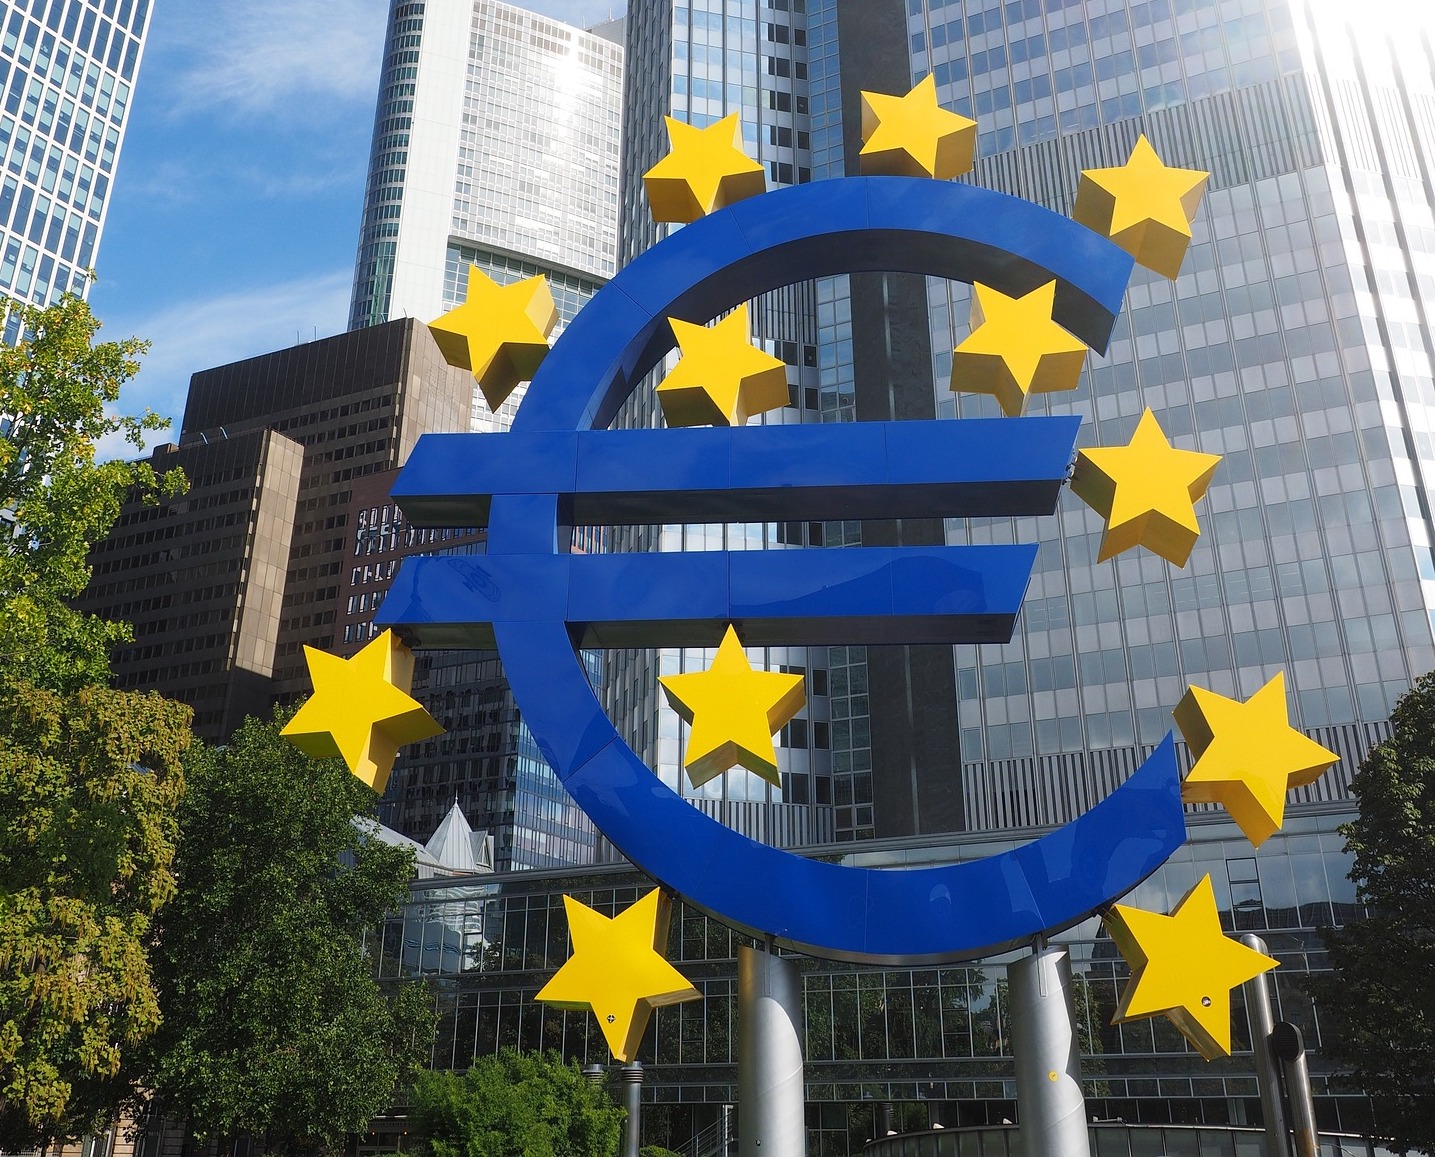 Nouvelle hausse des taux d'intérêt par la Banque centrale européenne